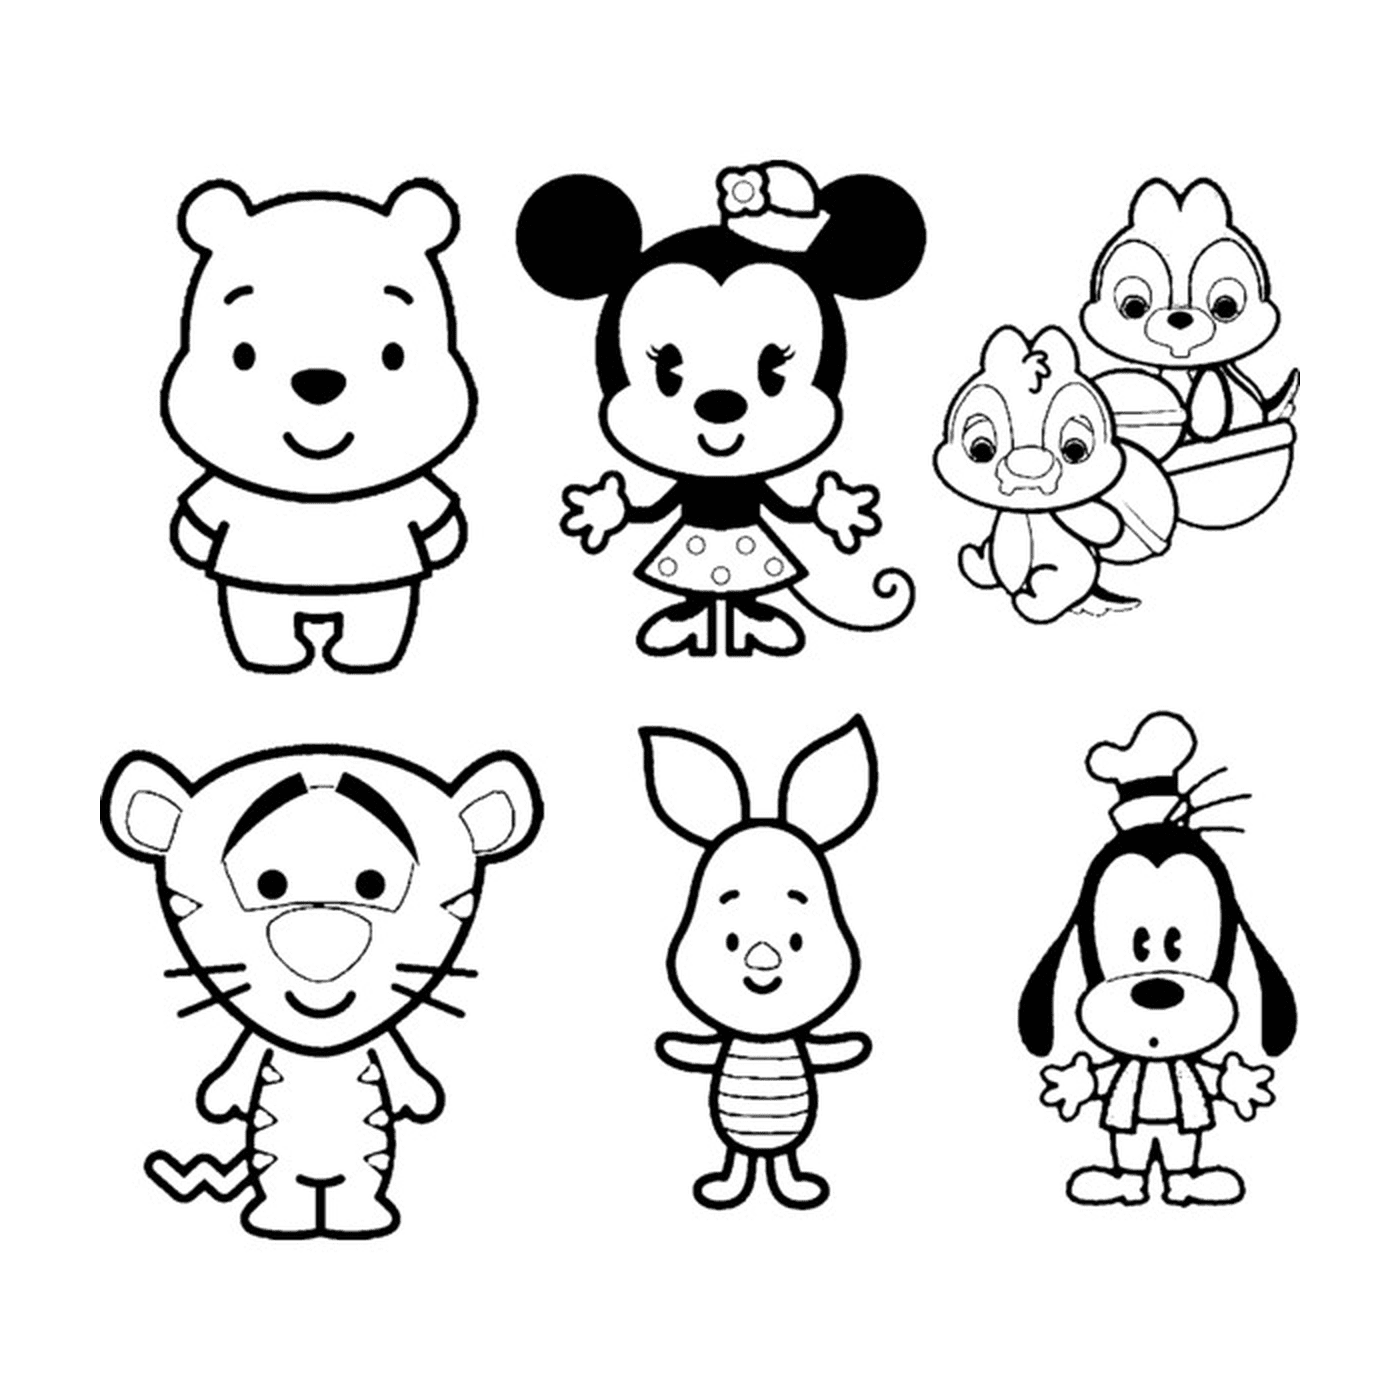  Personagens bonitos da Disney 